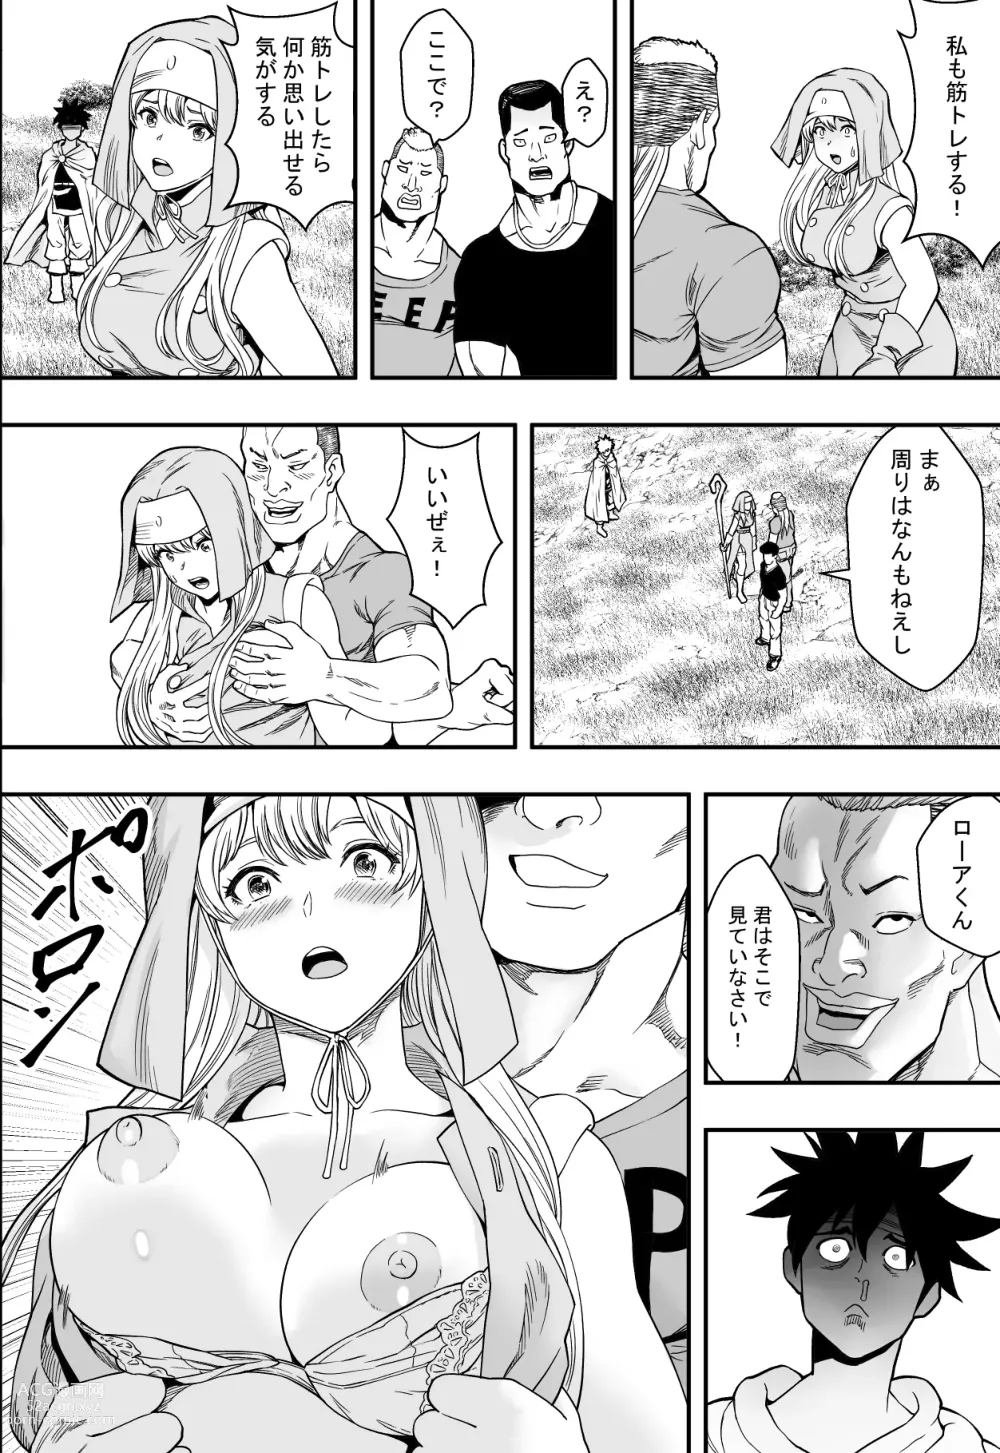 Page 41 of doujinshi 転生ハーレム全寝取られ